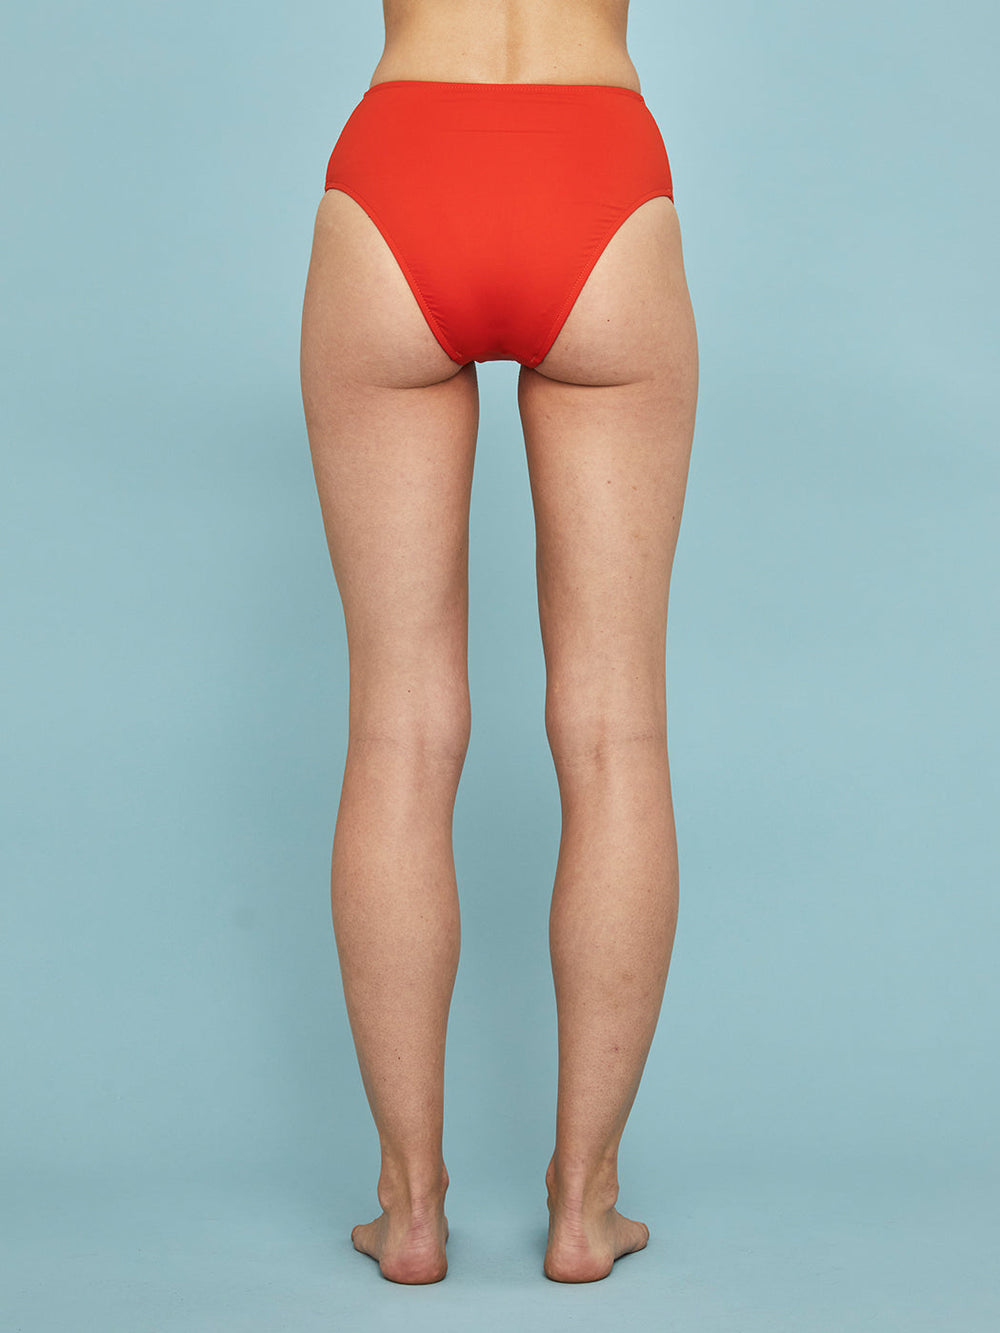 Poppy Bikini Bottom - Blood Orange